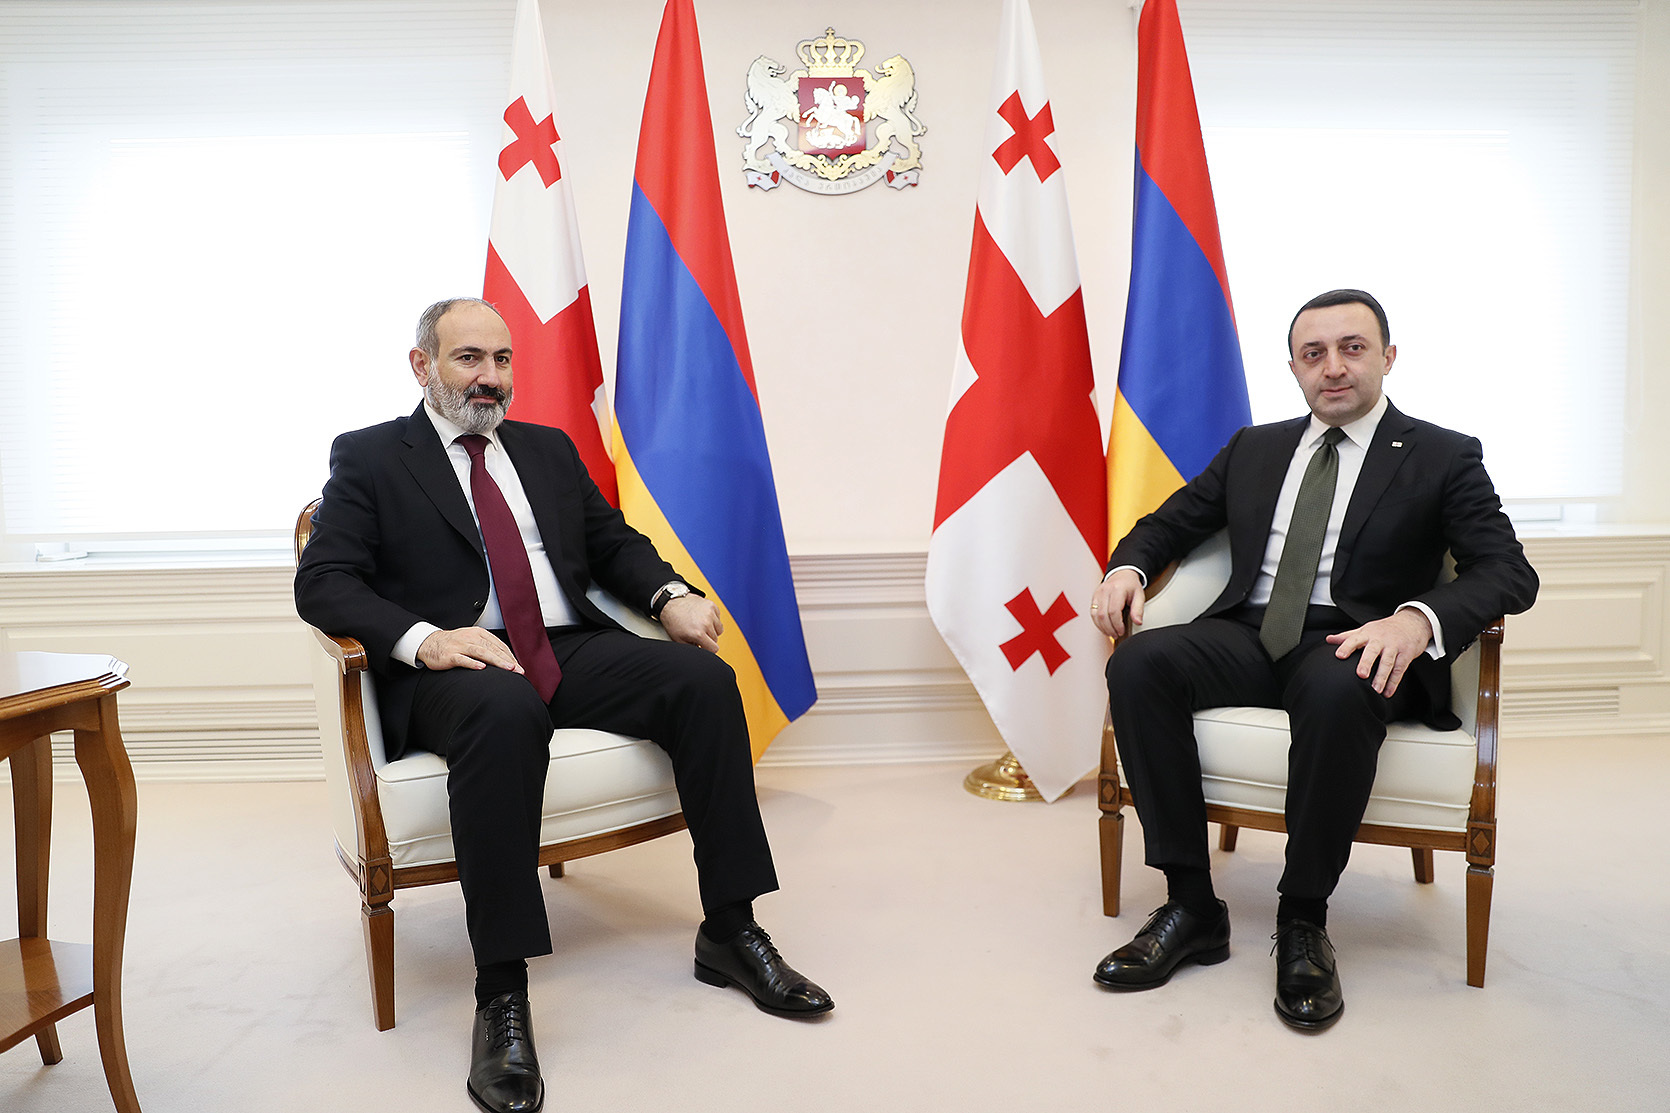 Гарибашвили: Грузия готова внести вклад в установление мира и стабильности в регионе